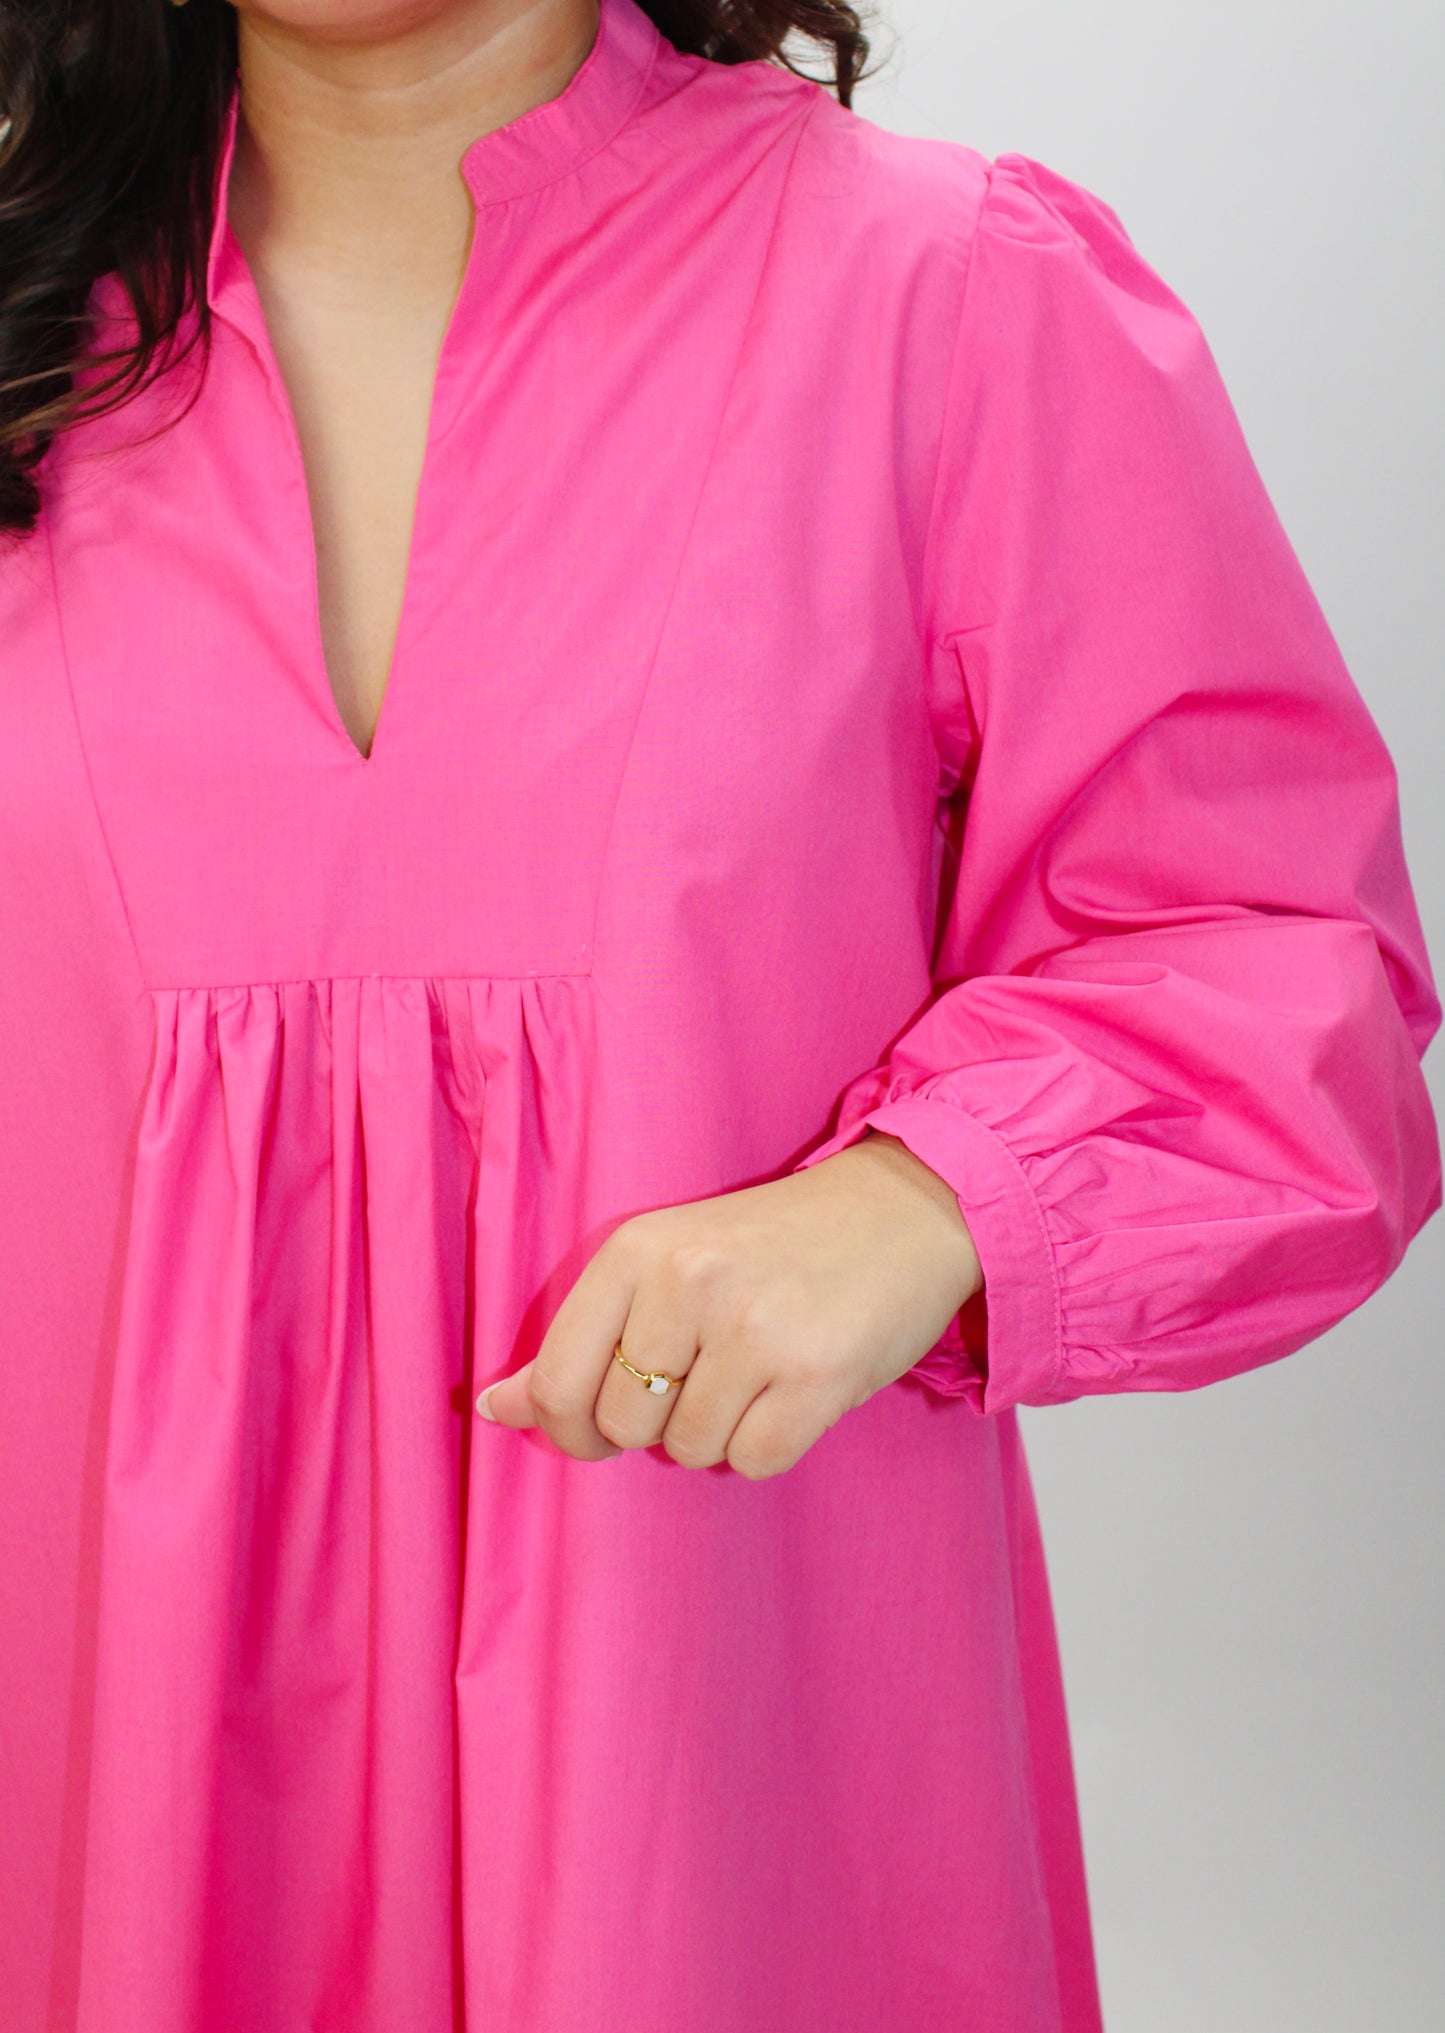 The Dixie Bubble Gum Pink Shirt Dress